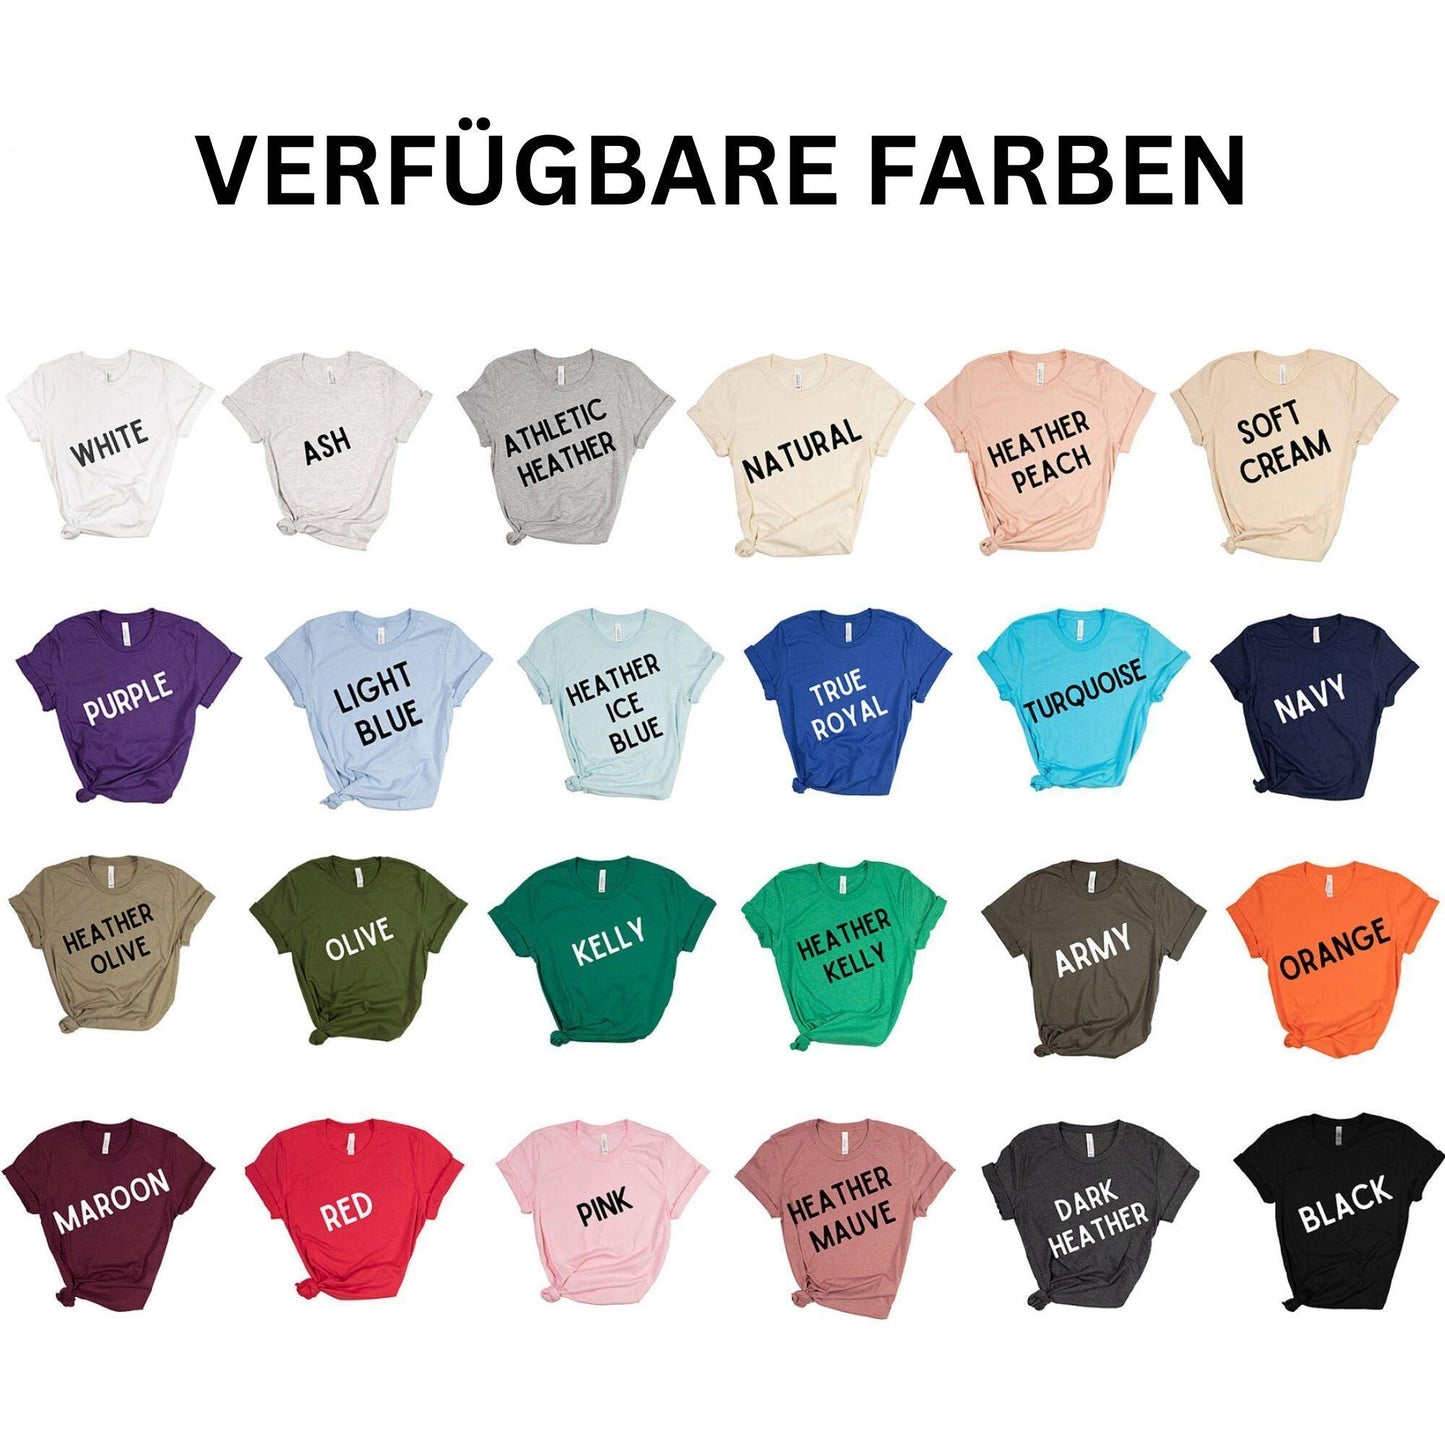 Personalisiertes Besticktes Papa Sweatshirt mit Namen und Jahr